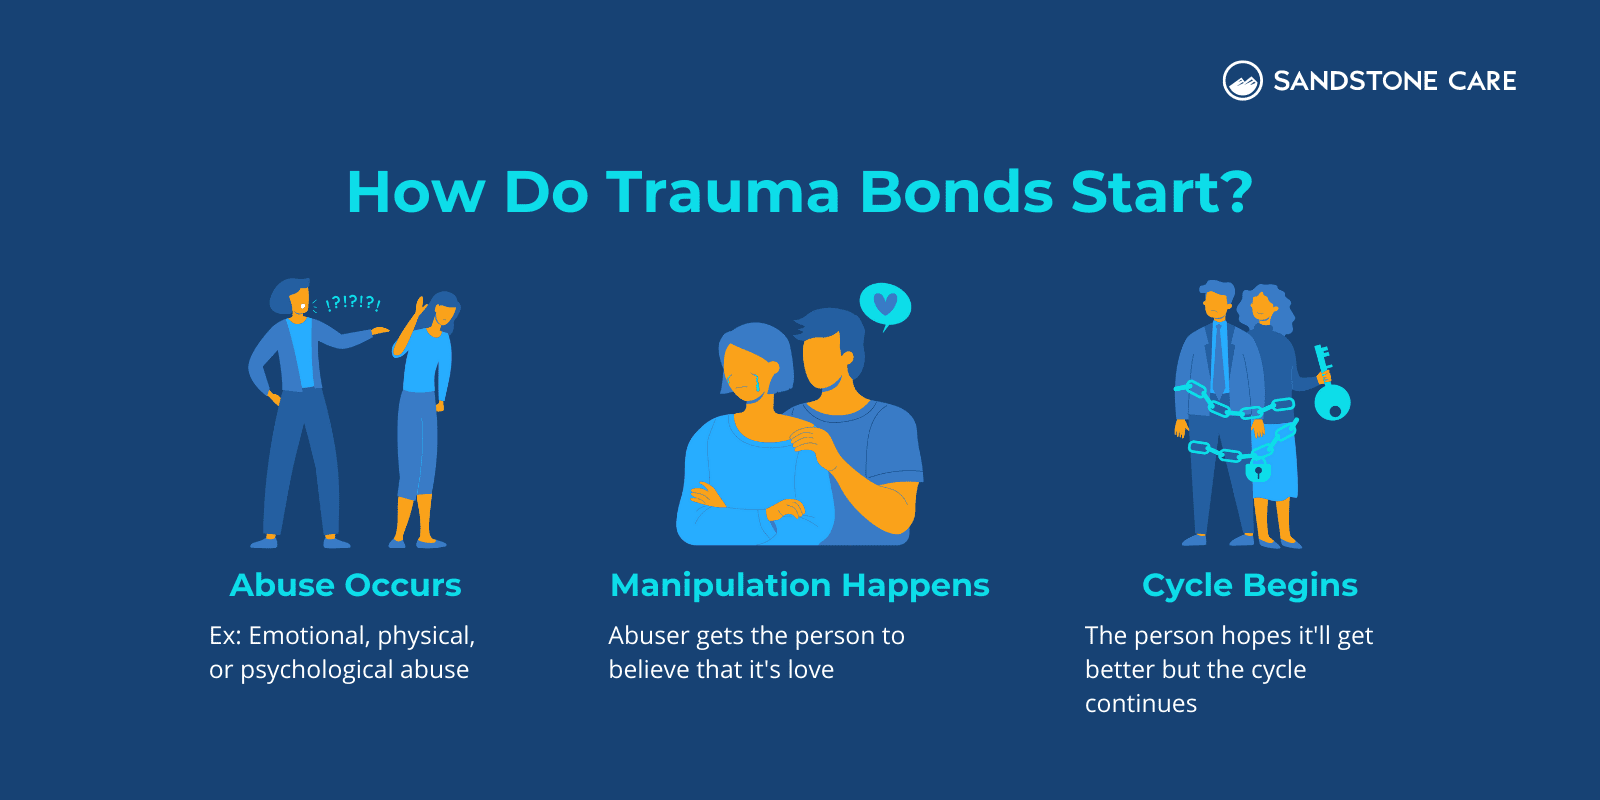 "How Do Trauma Bonds Start?" written above 3 steps of how trauma bond forms